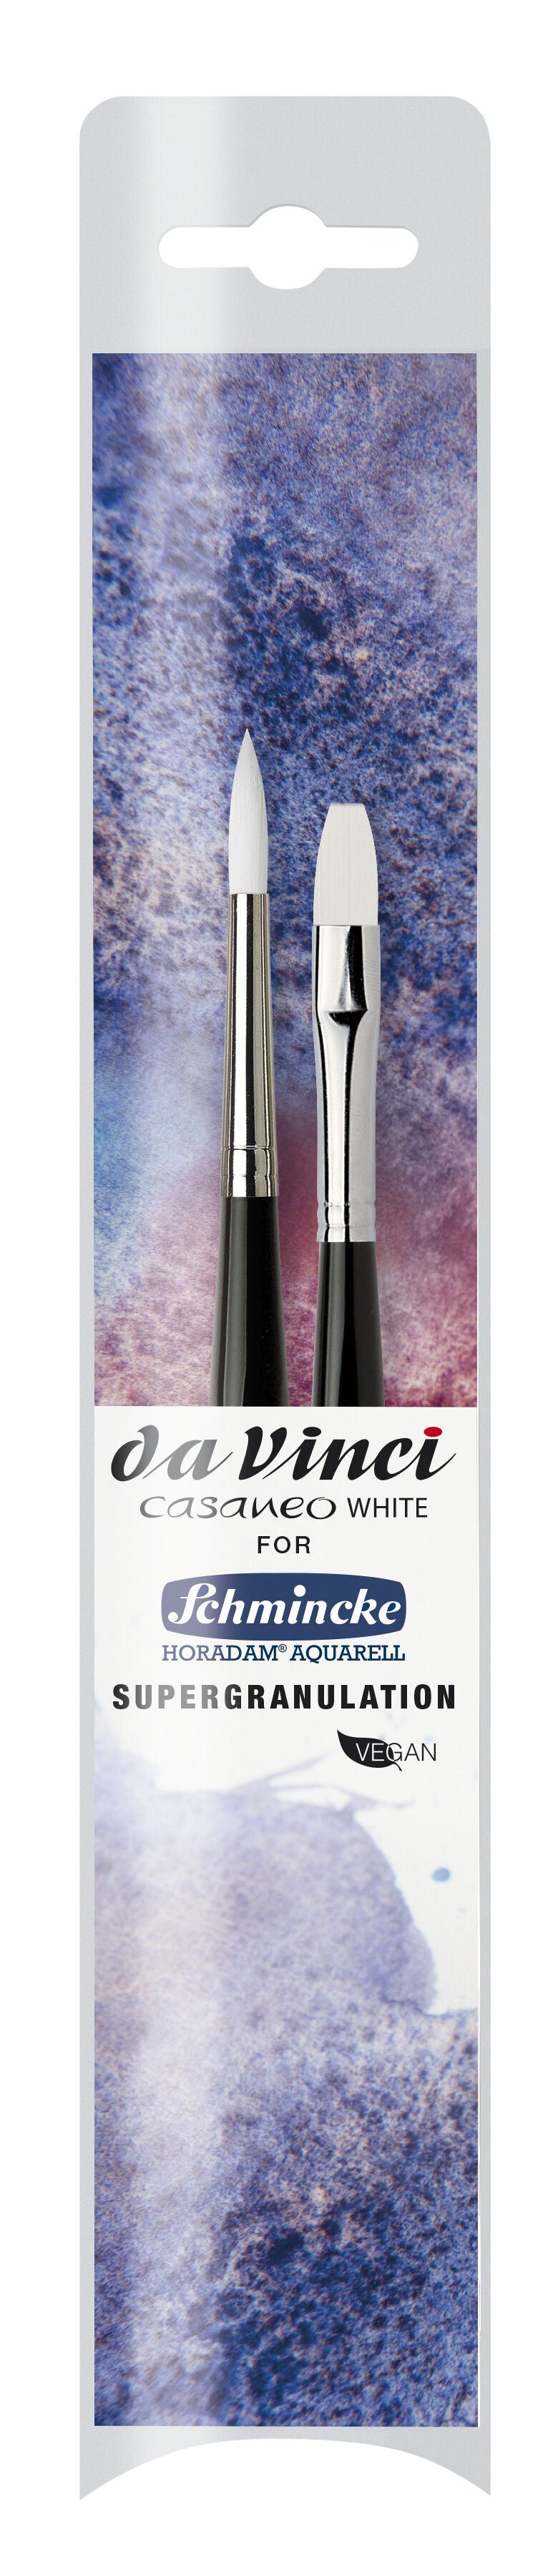 Da Vinci : CASANEO WHITE Brush Set